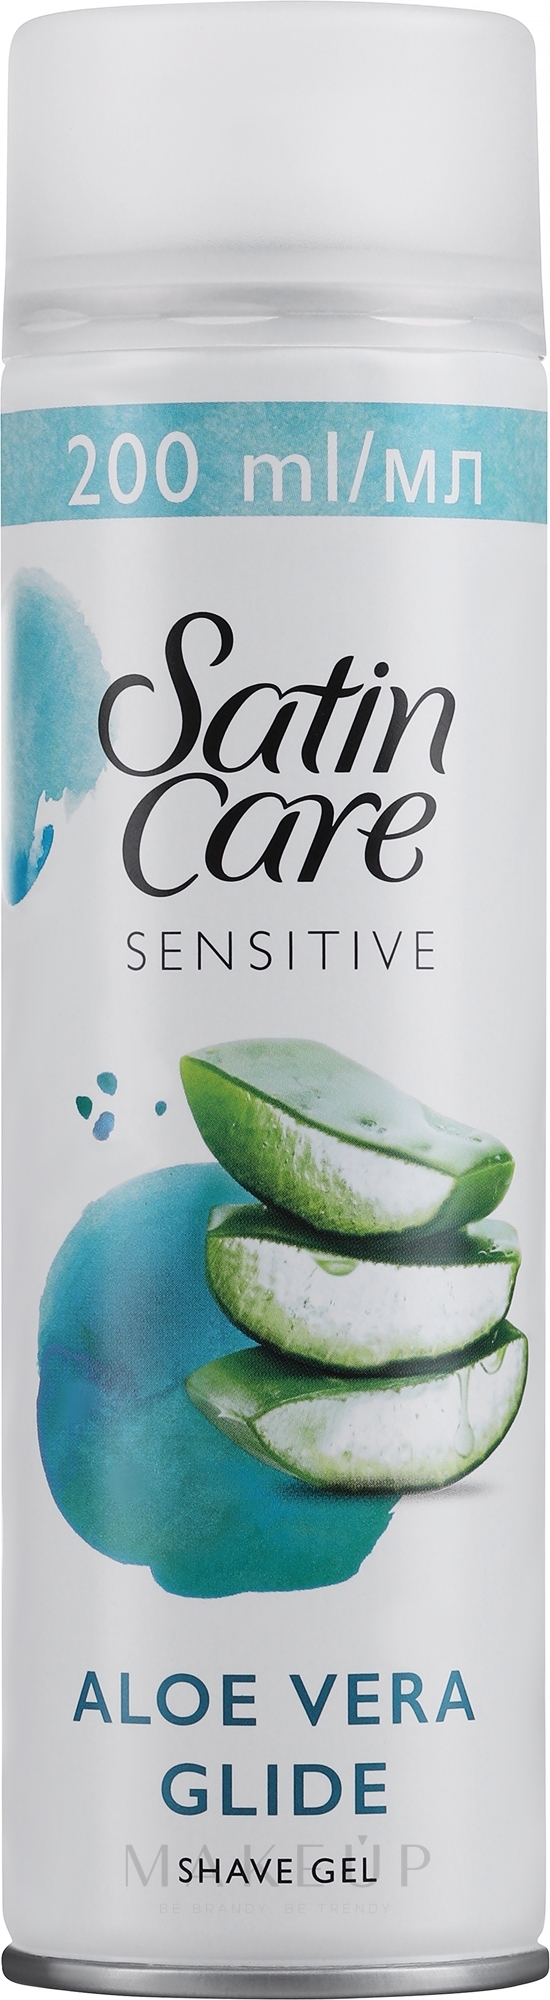 Rasiergel mit Aloe vera für empfindliche Haut - Gillette Satin Care Sensitive Skin Shave Gel for Woman — Foto 200 ml